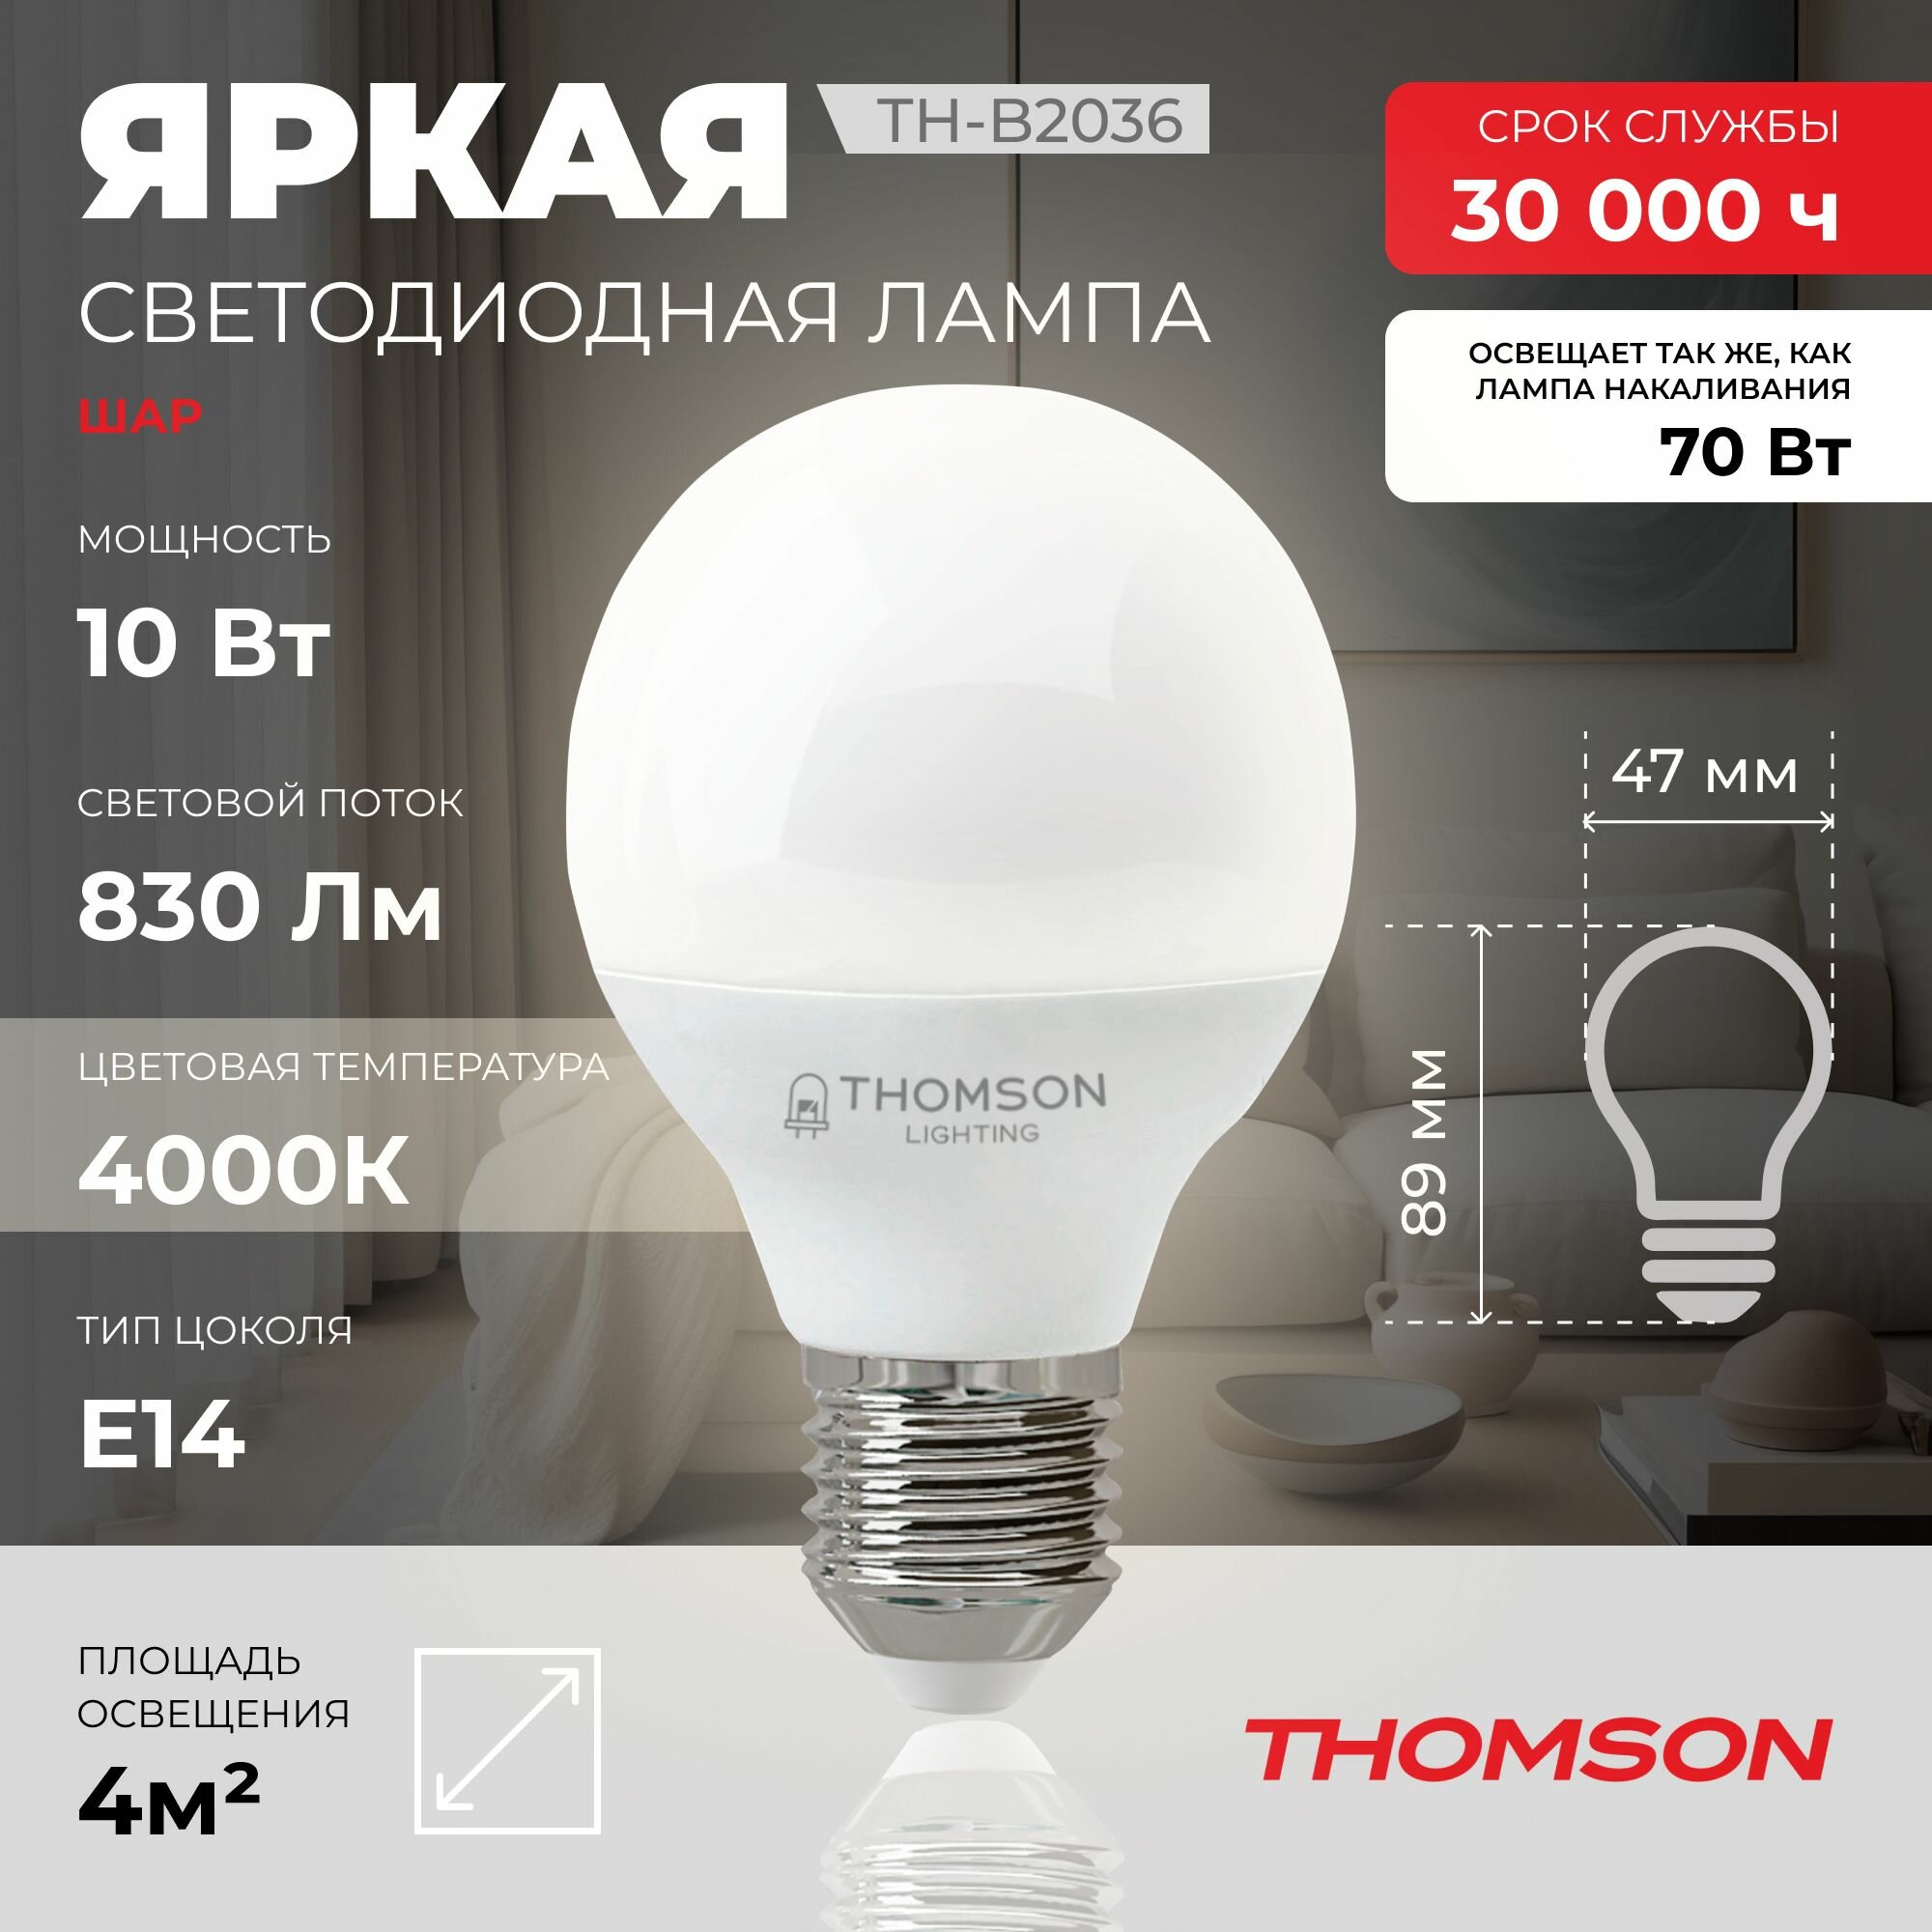 Лампочка Thomson TH-B2036 10 Вт, E14, 4000K, шар, нейтральный белый свет